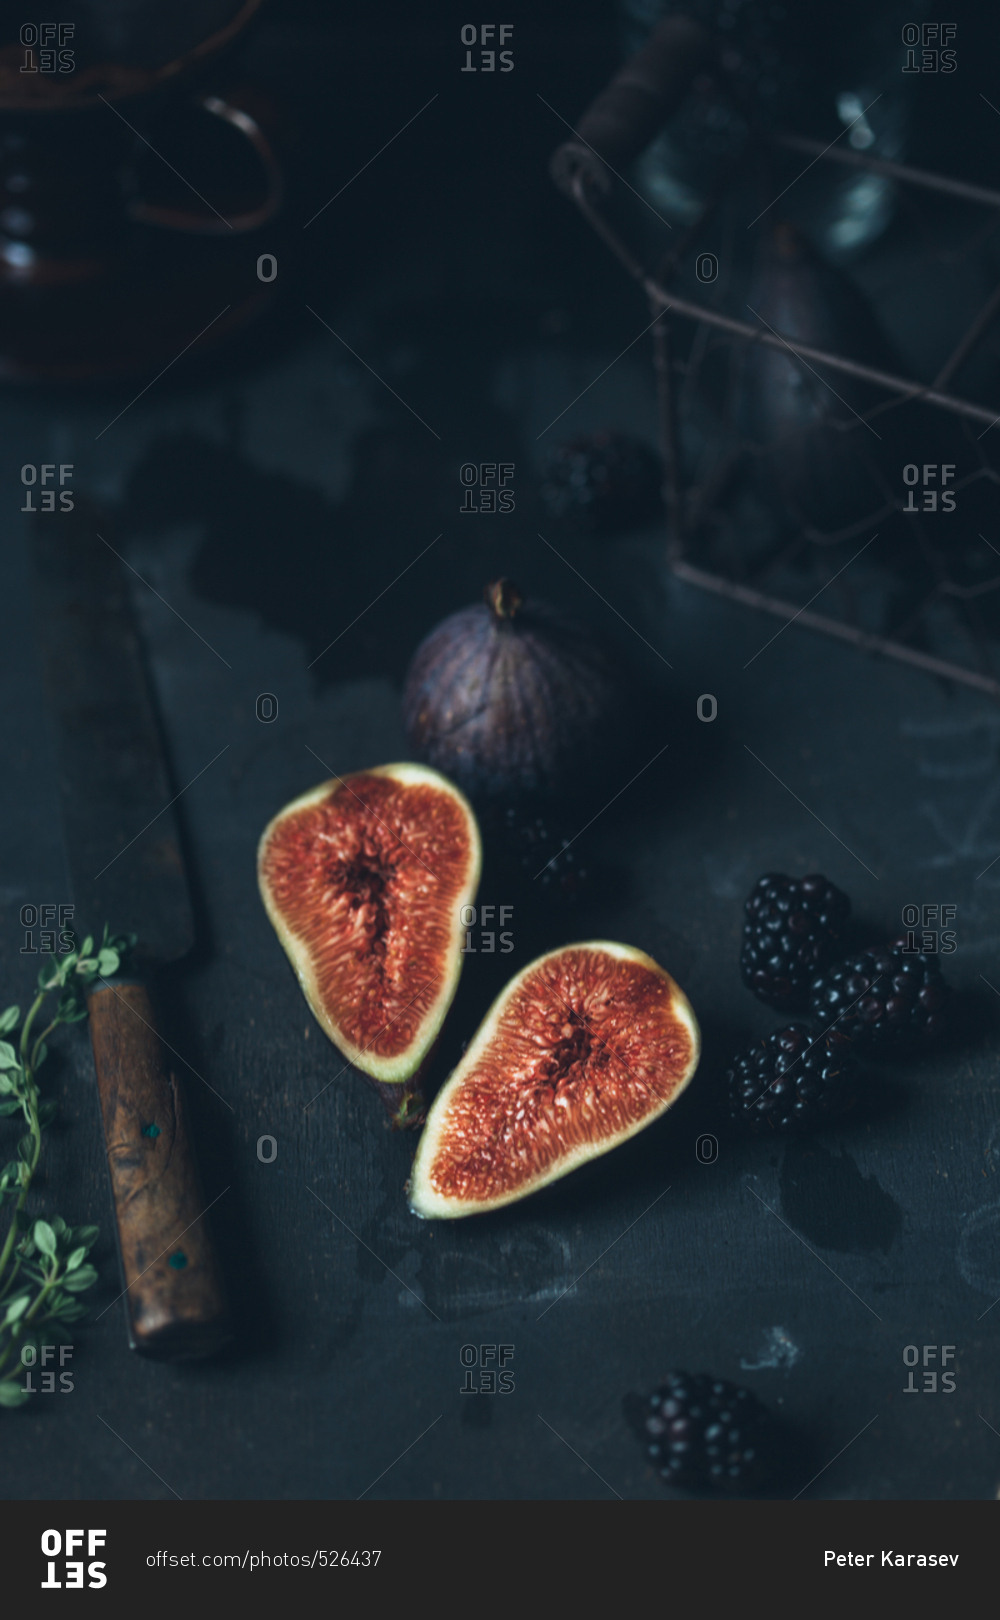 Figs and blackberries in dark setting